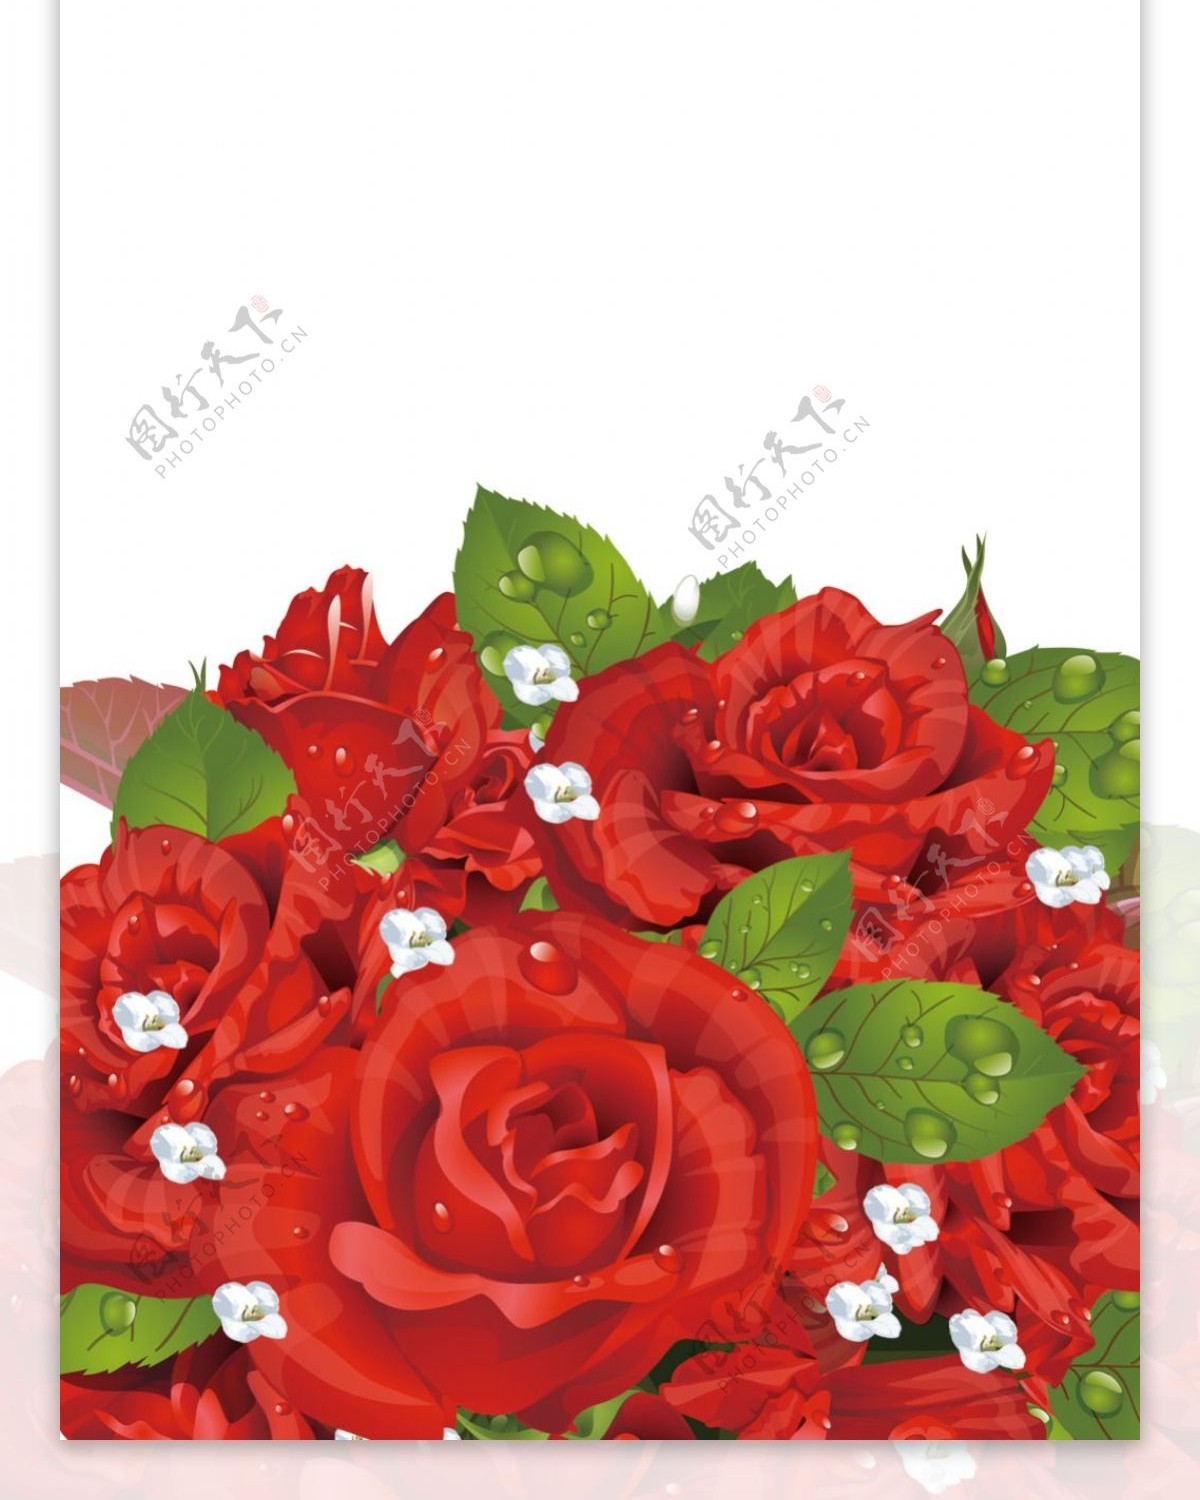 玫瑰花素材展架素材画面